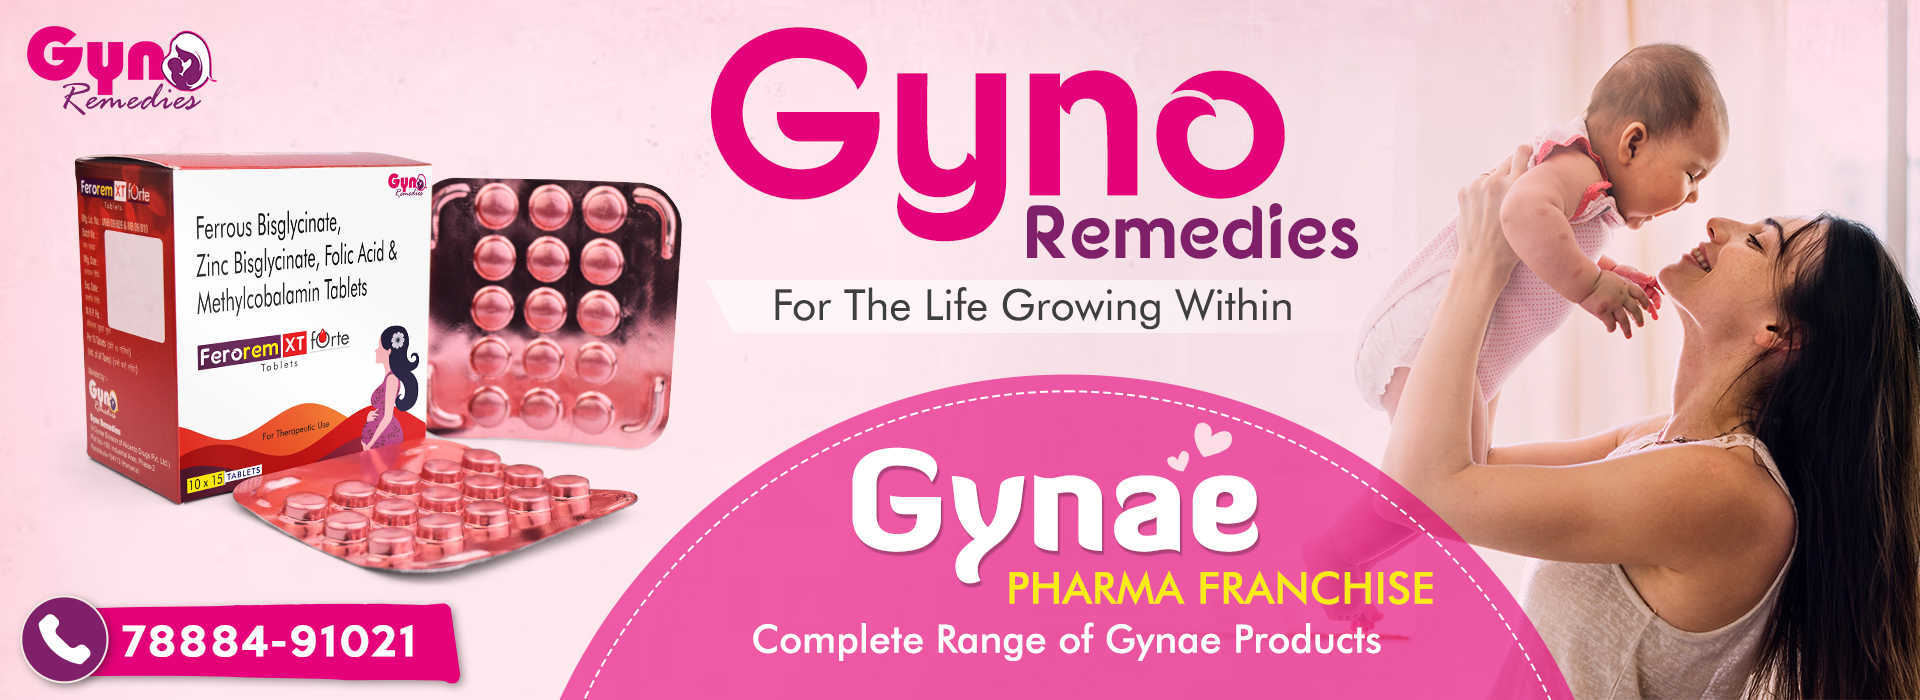 Gynae PCD Franchsie Gyno Remedies 1920x700